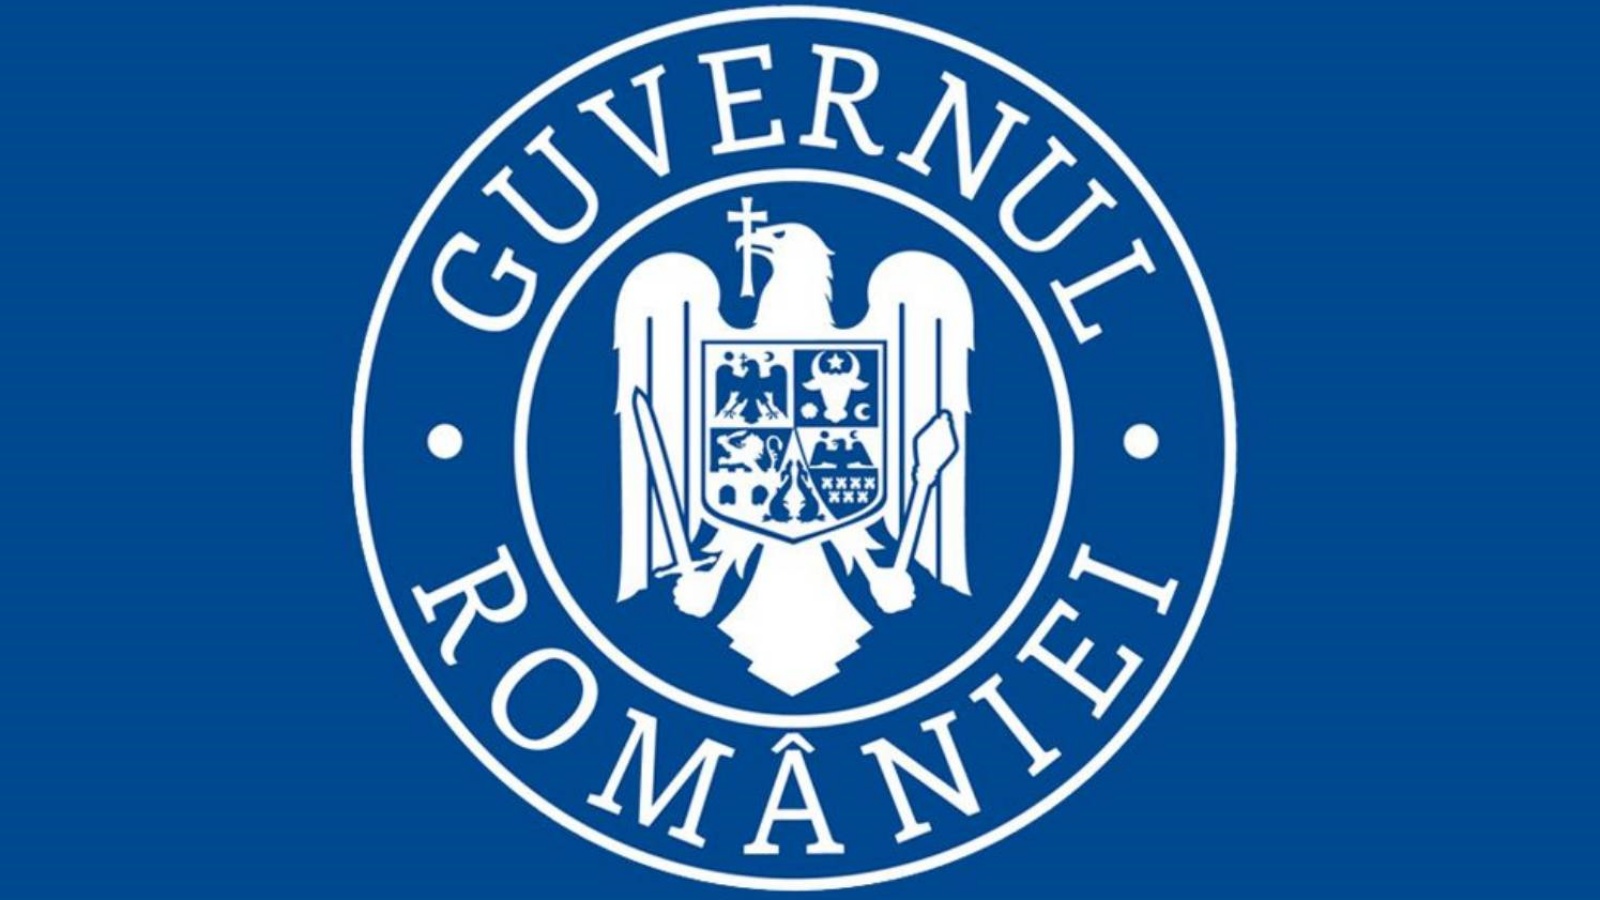 Gouvernement roumain : masque obligatoire dans les localités avec des incidents majeurs